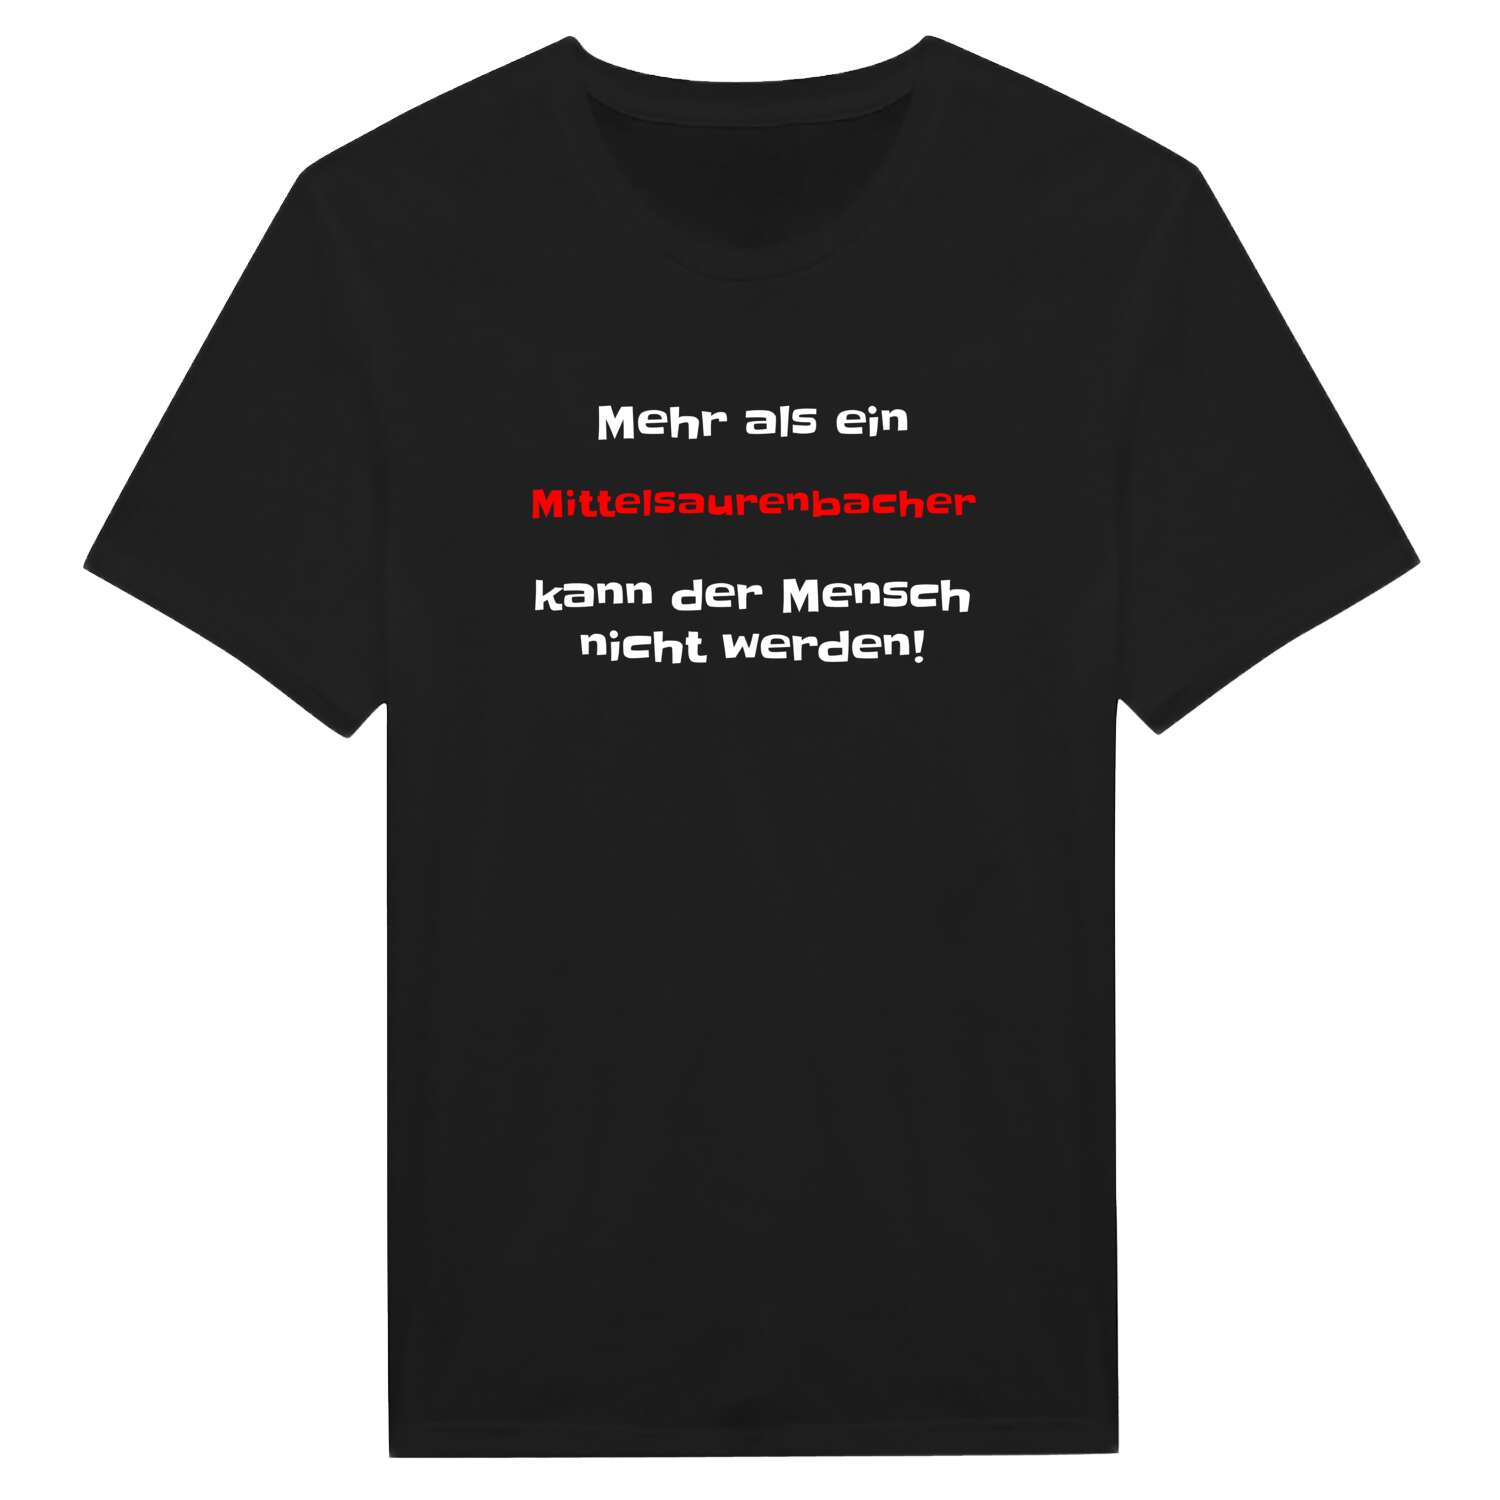 Mittelsaurenbach T-Shirt »Mehr als ein«